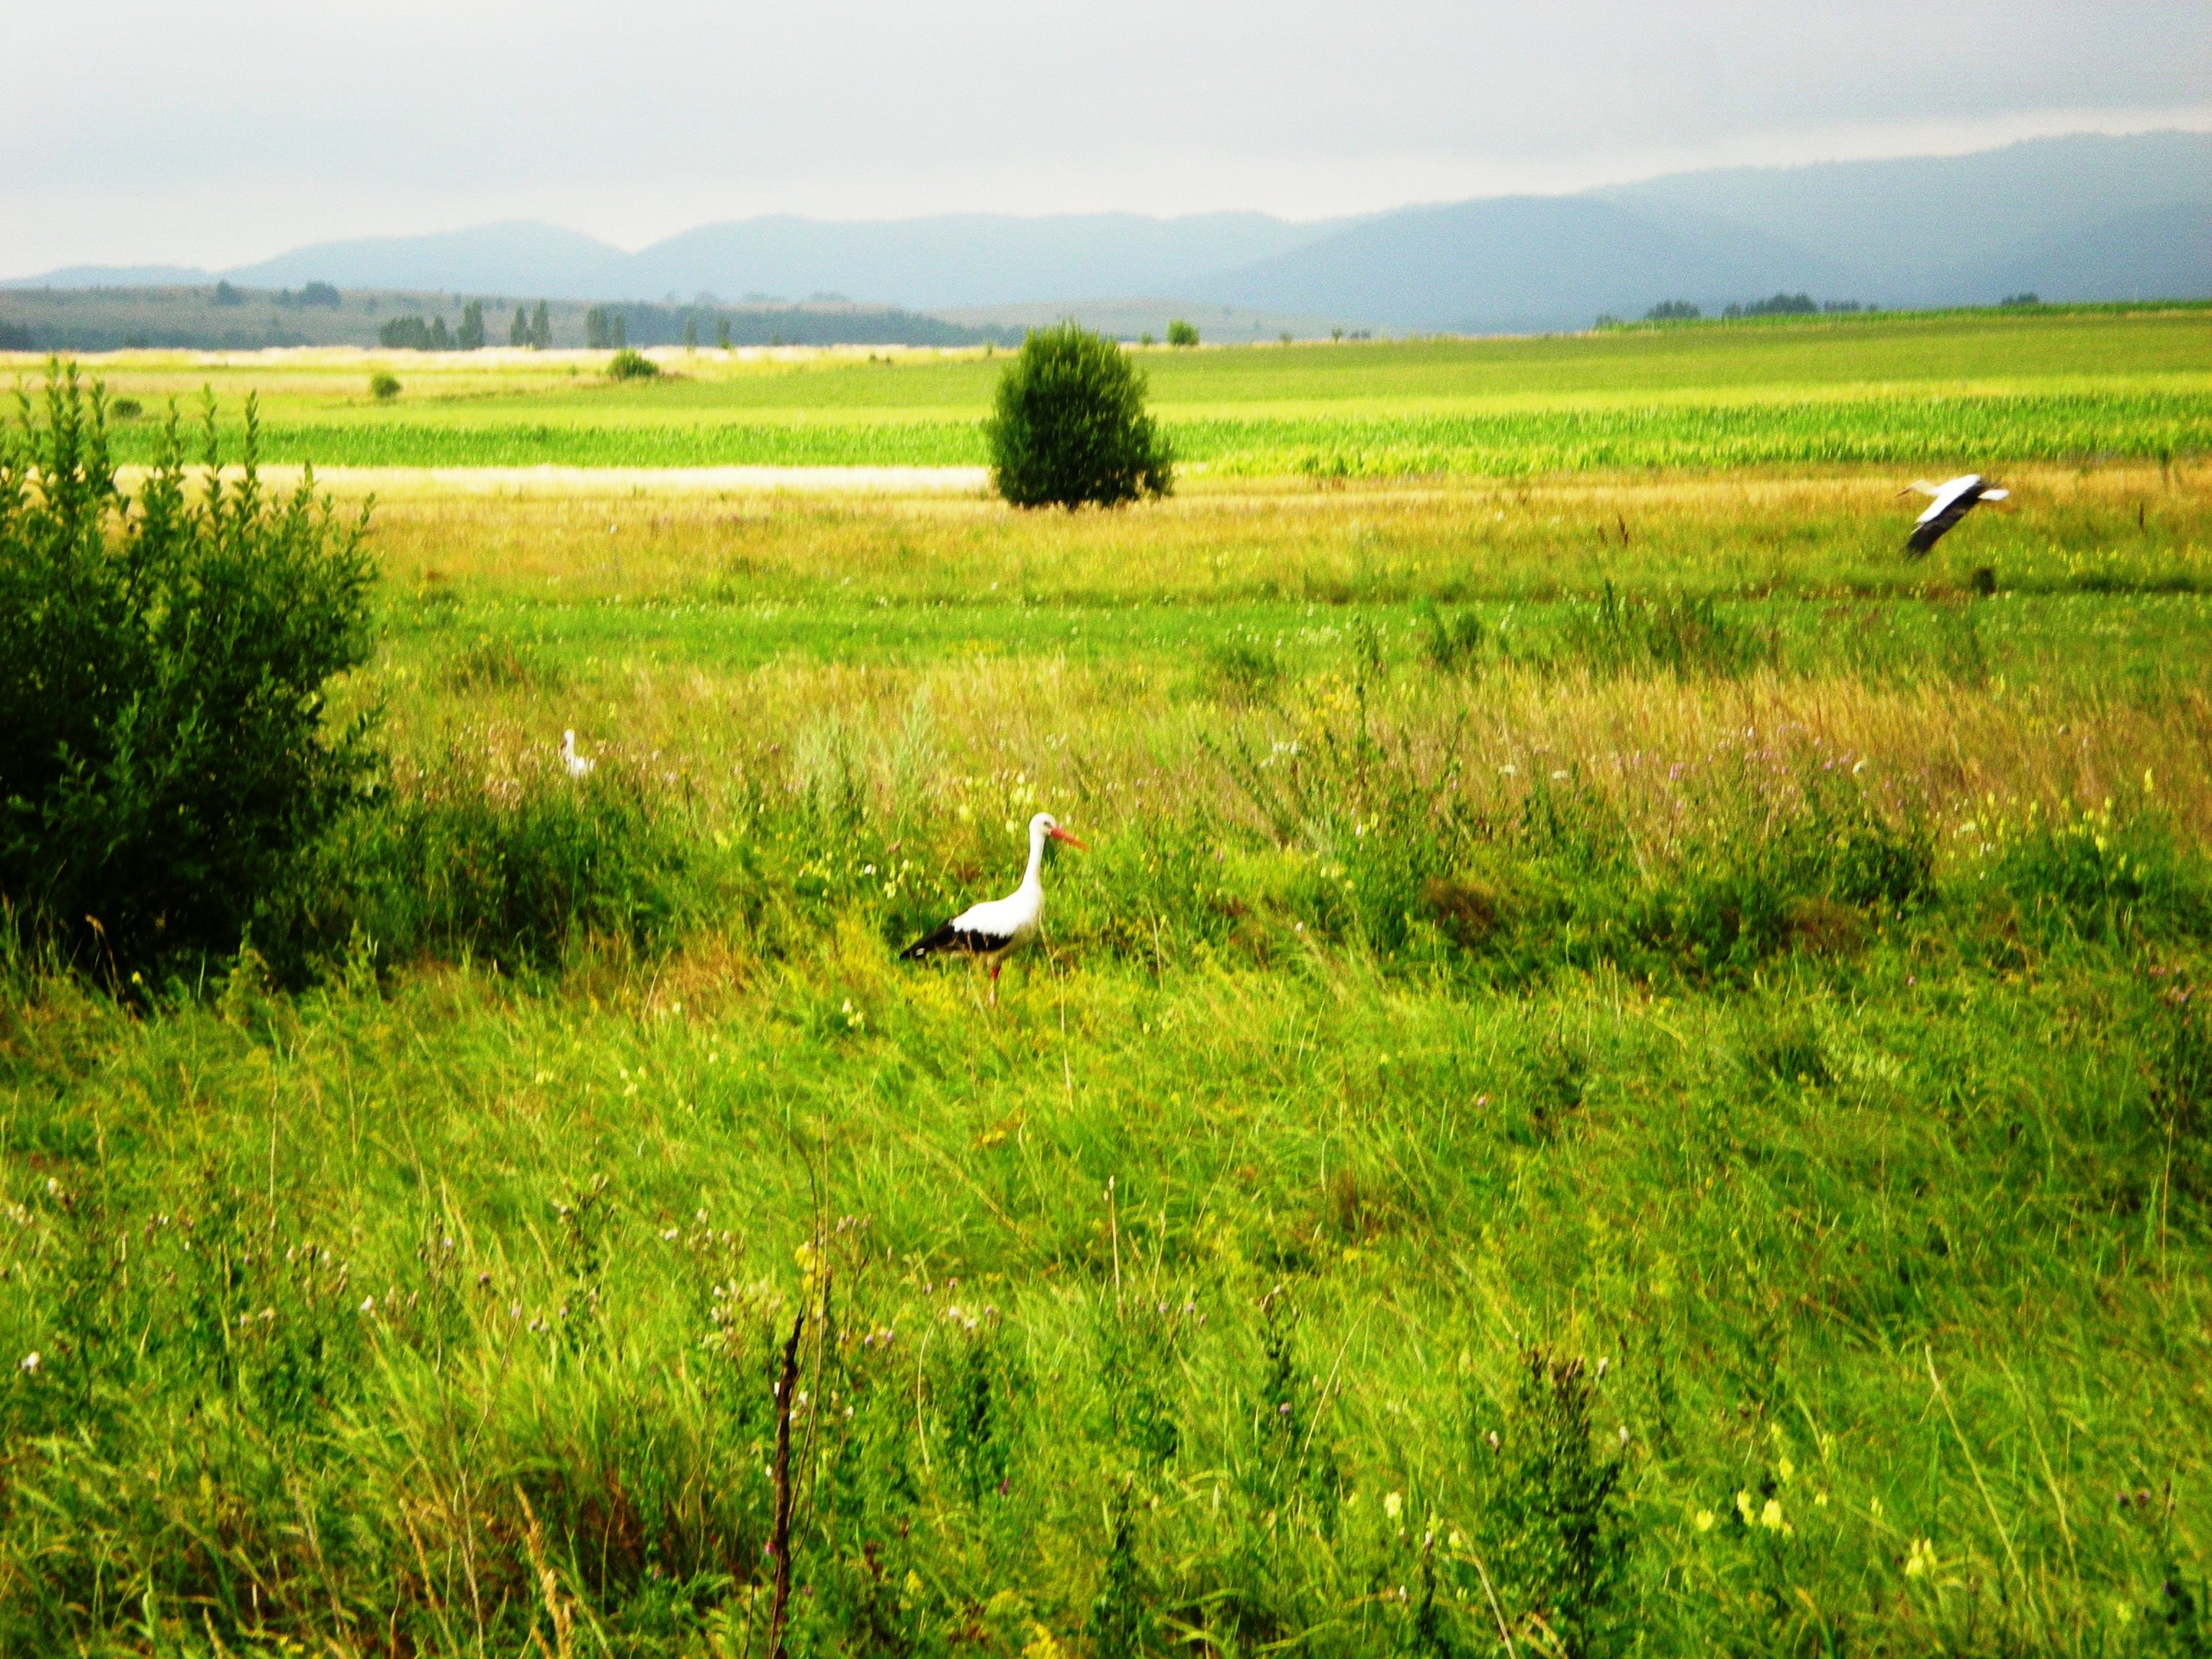 Storks in Falticeni